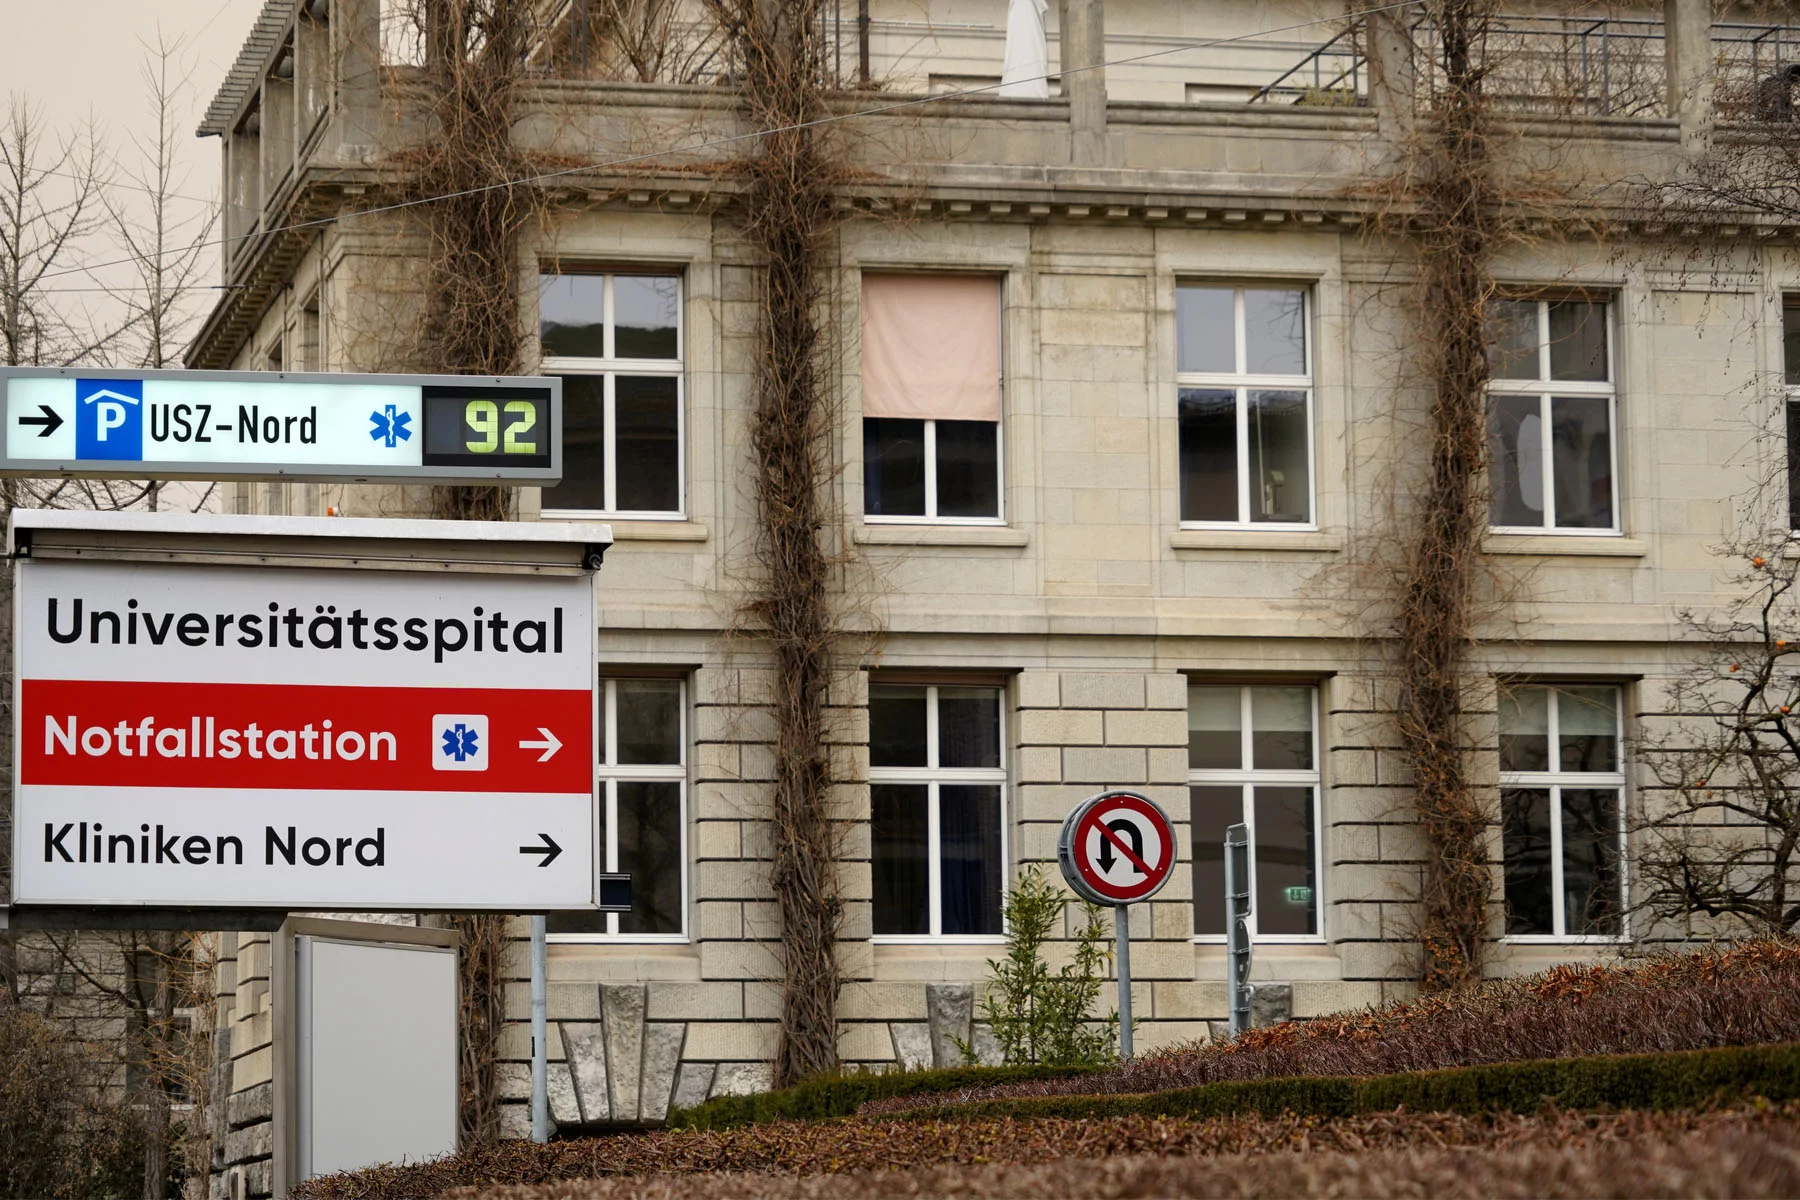 hospitals in Switzerland: sign board pointing to Zurich's Universitätsspital emergency room